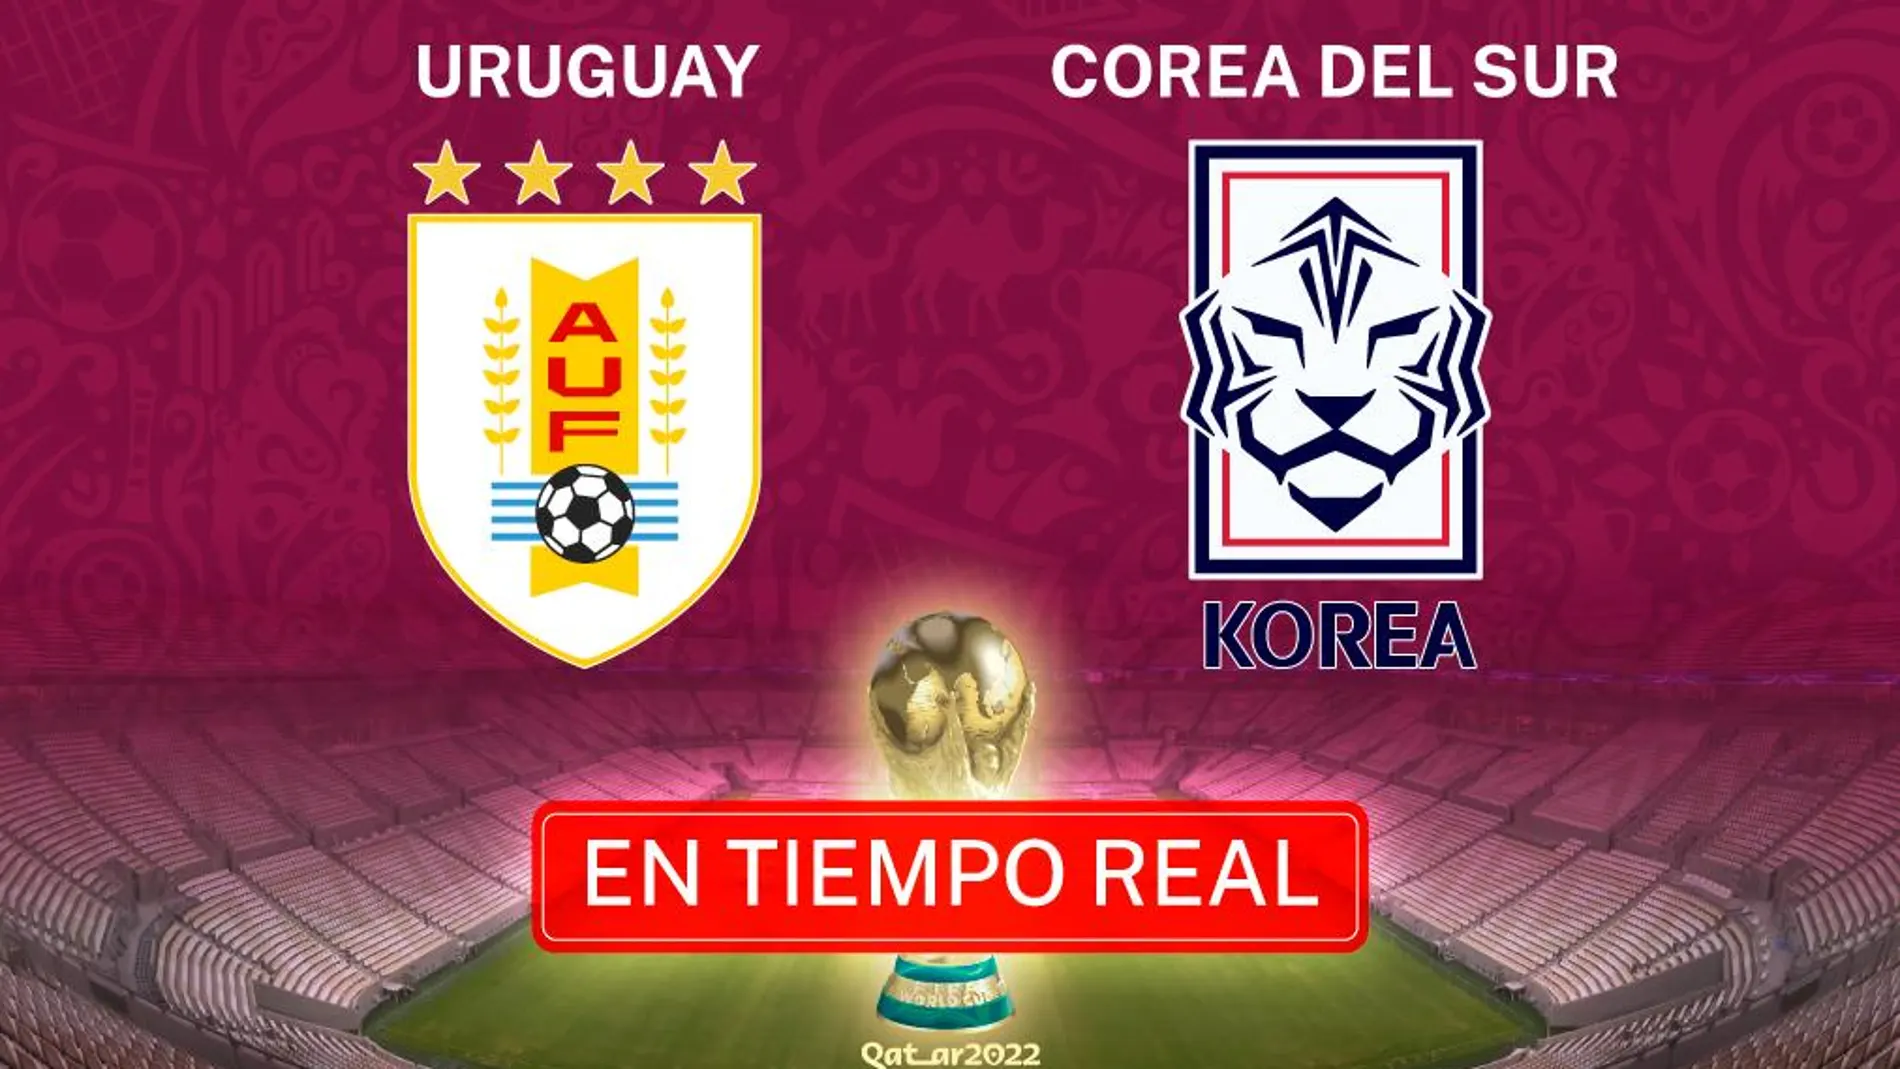 Uruguay - Corea del Sur